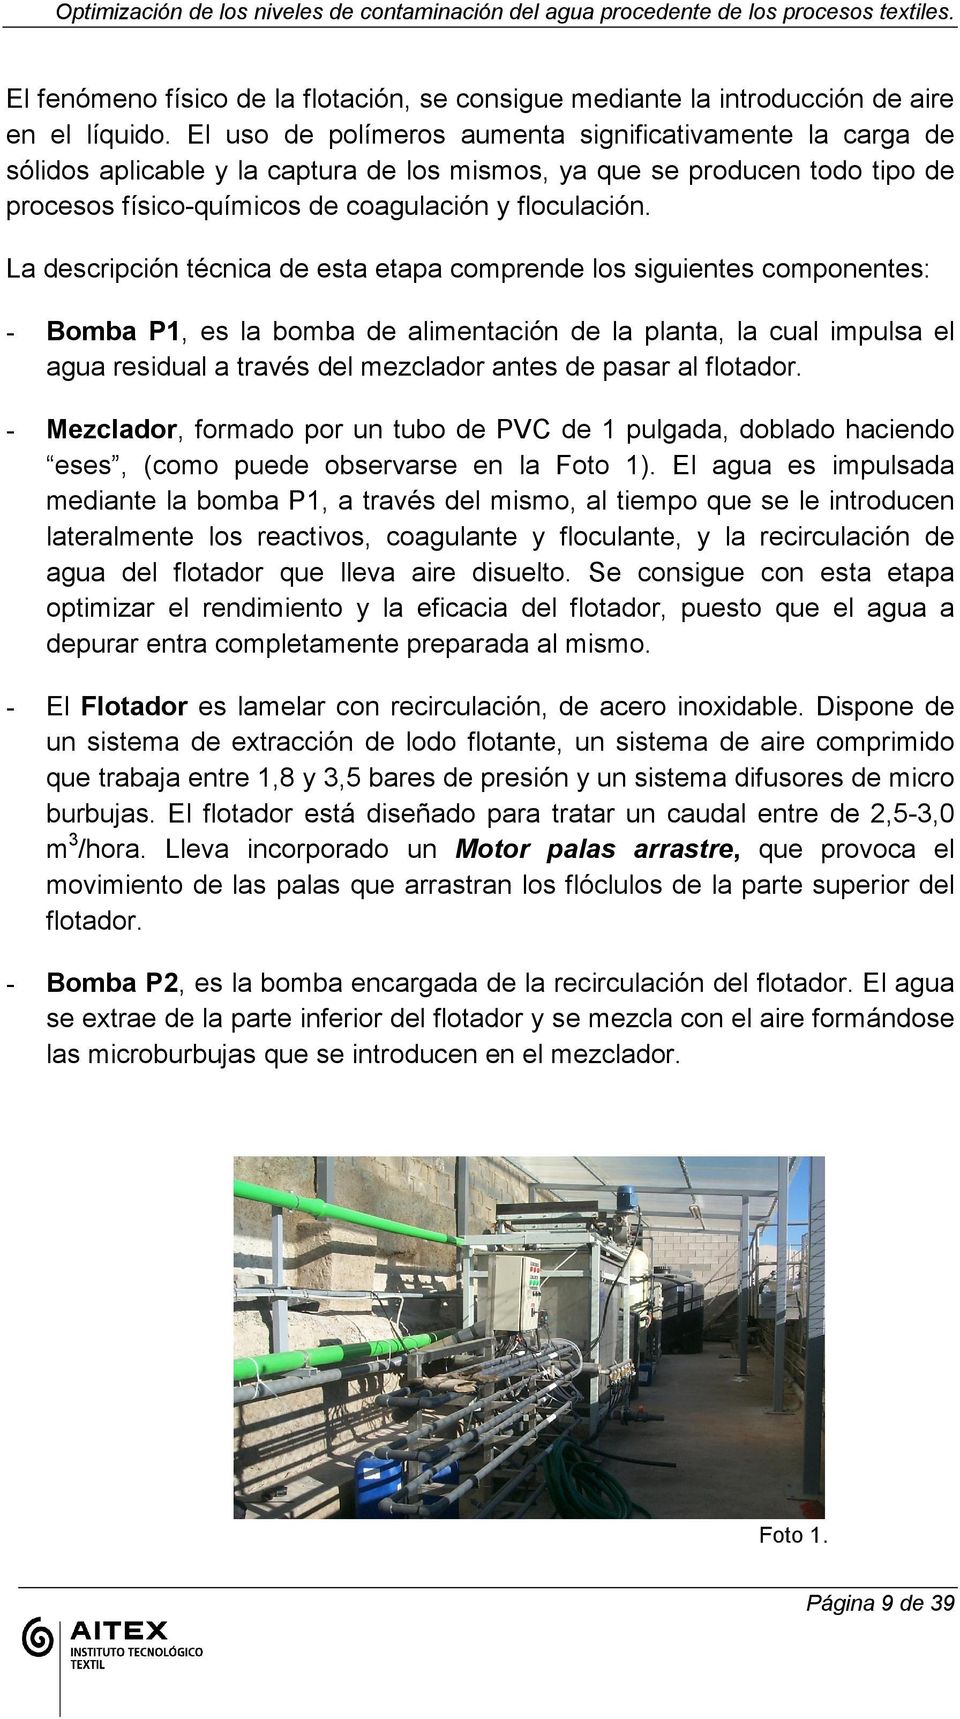 La descripción técnica de esta etapa comprende los siguientes componentes: - Bomba P1, es la bomba de alimentación de la planta, la cual impulsa el agua residual a través del mezclador antes de pasar